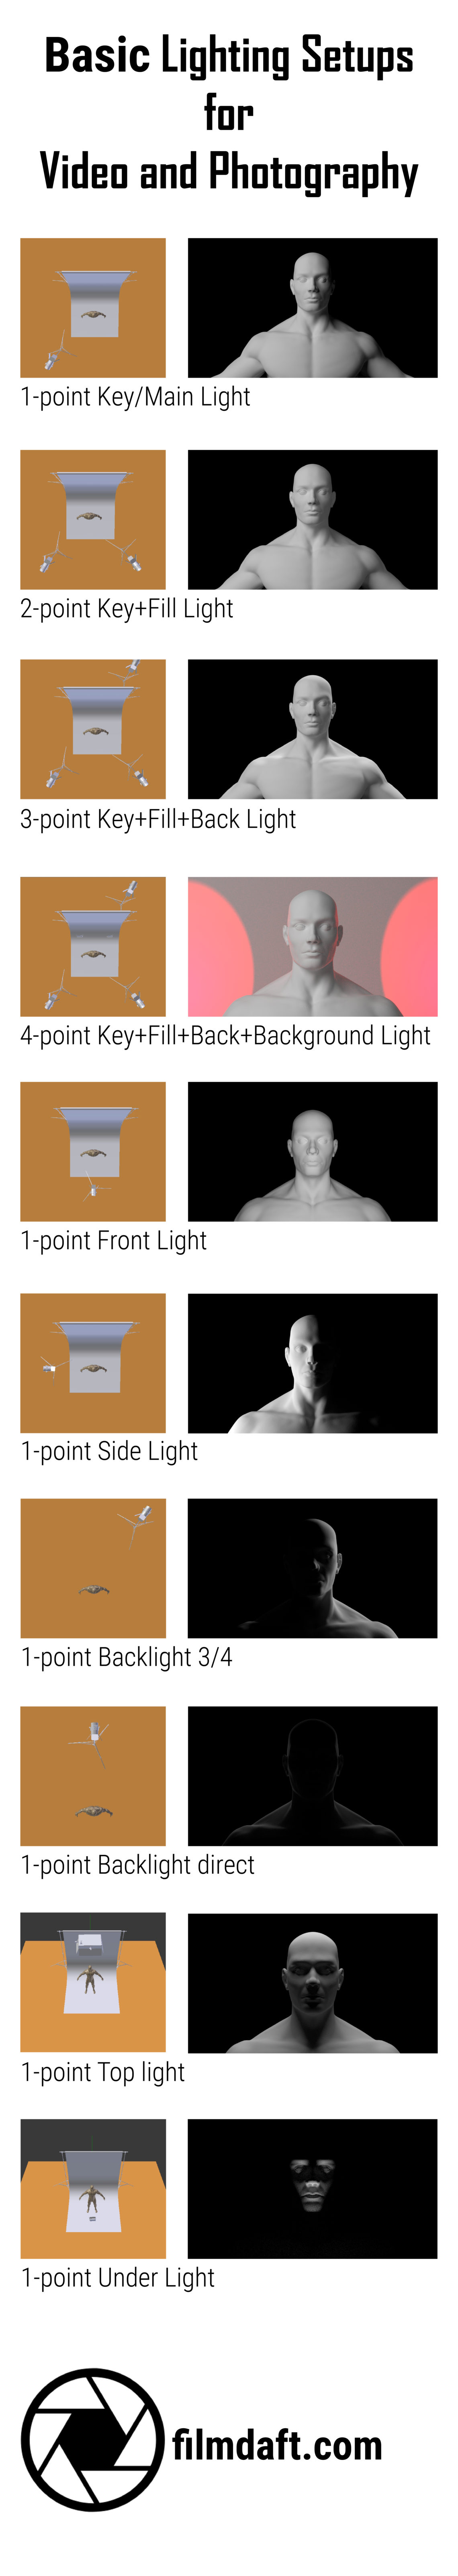 Pinterest lighting setup guide